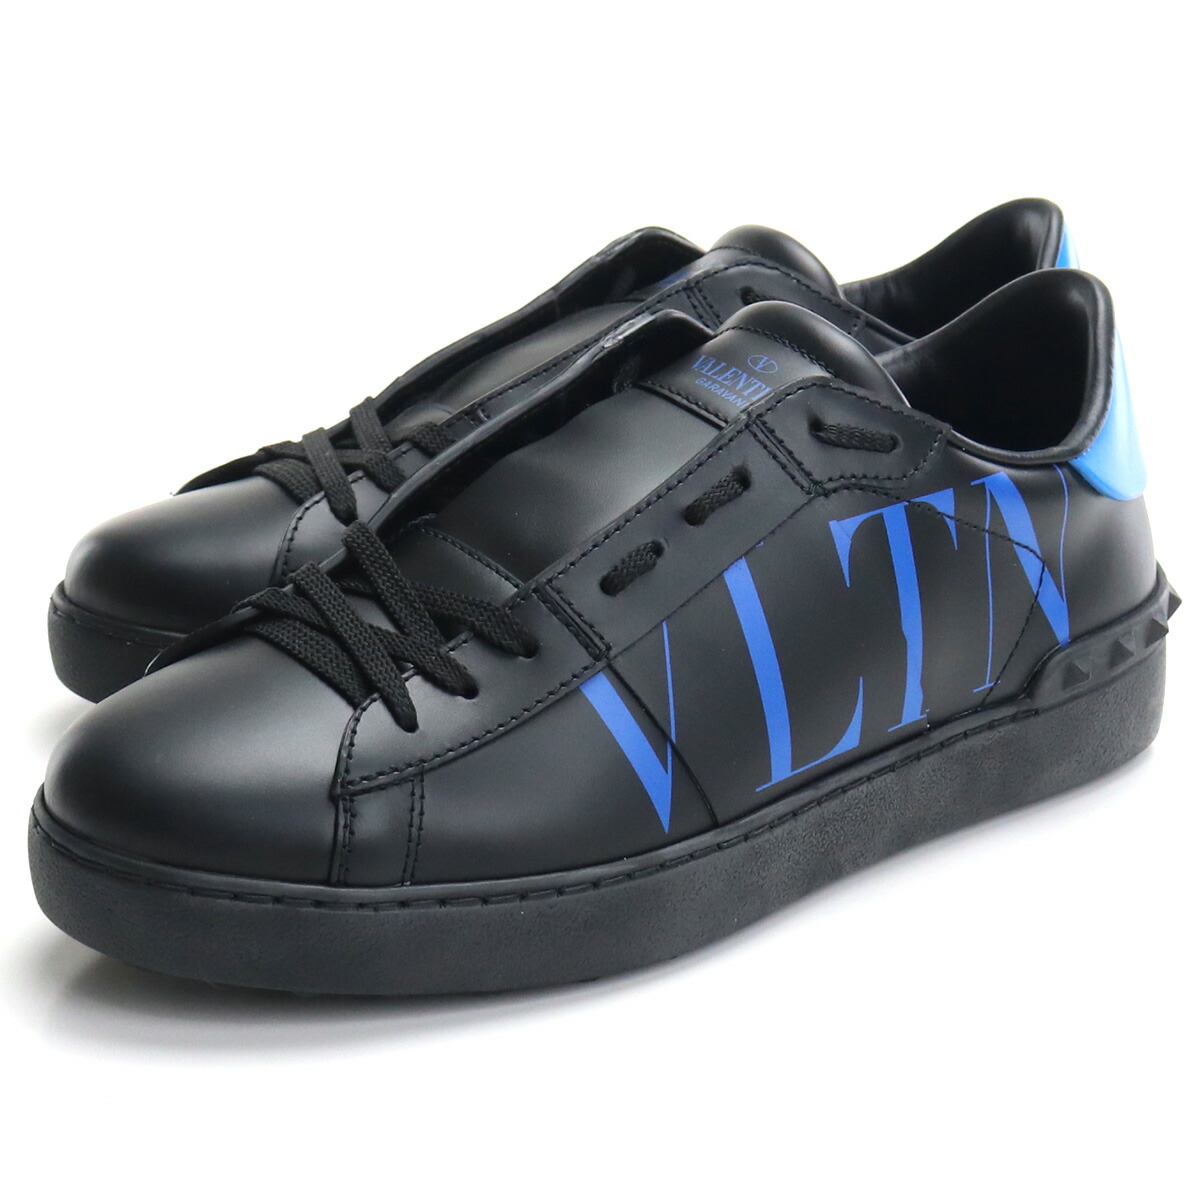 ヴァレンティノ VALENTINO メンズ ロゴ スニーカー ローカット UY2S0830 NHN KP8 ブラック ブルー系 bos-18 shoes-01 メンズ